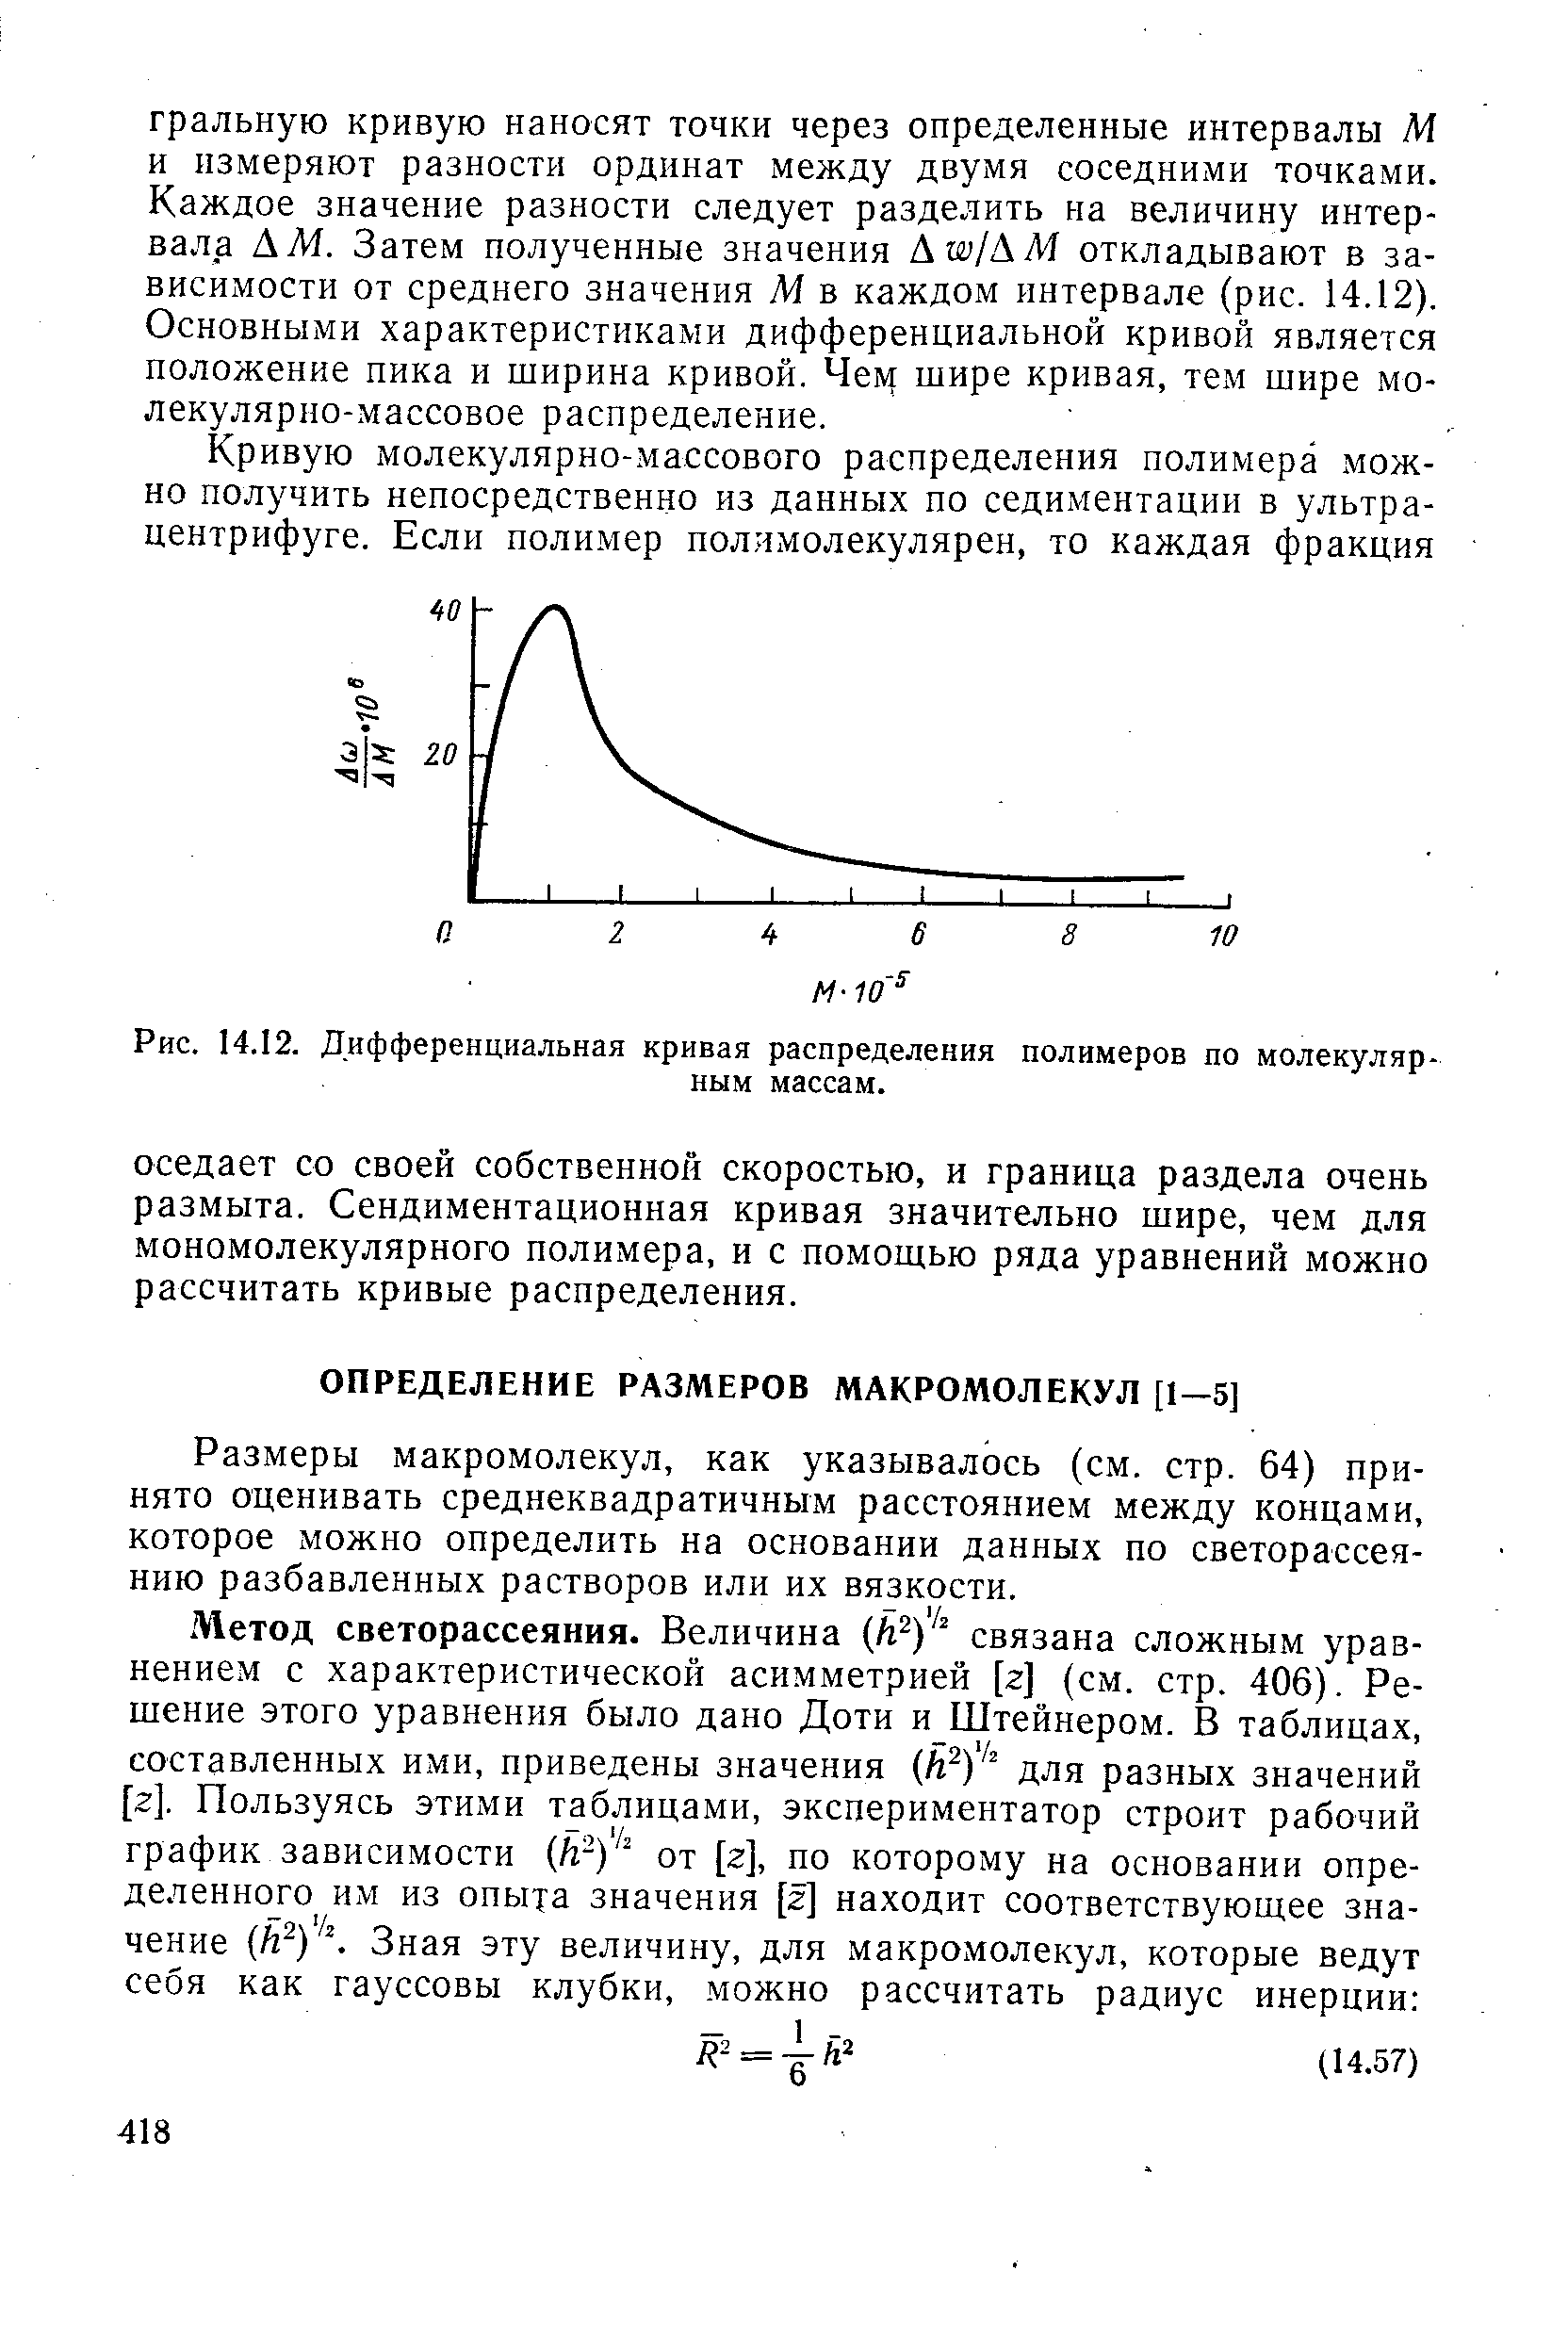 Размеры макромолекул, как указывалось (см. стр. 64) принято оценивать среднеквадратичным расстоянием между концами, которое можно определить на основании данных по светорассеянию разбавленных растворов или их вязкости.